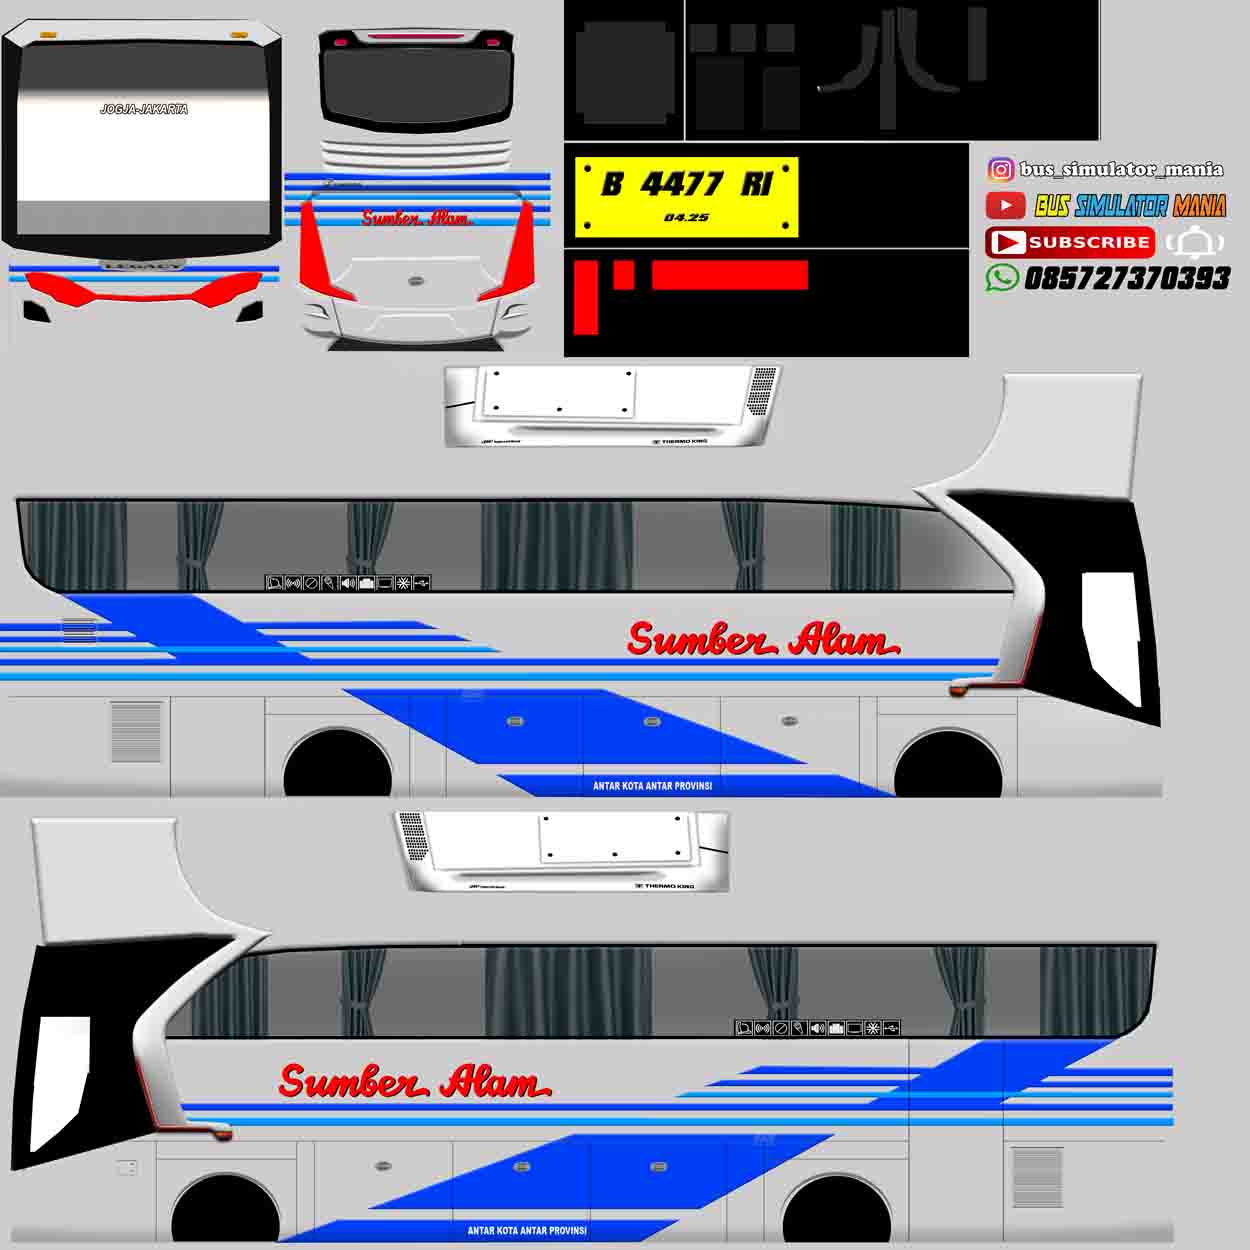 livery bus sumber alam terbaru